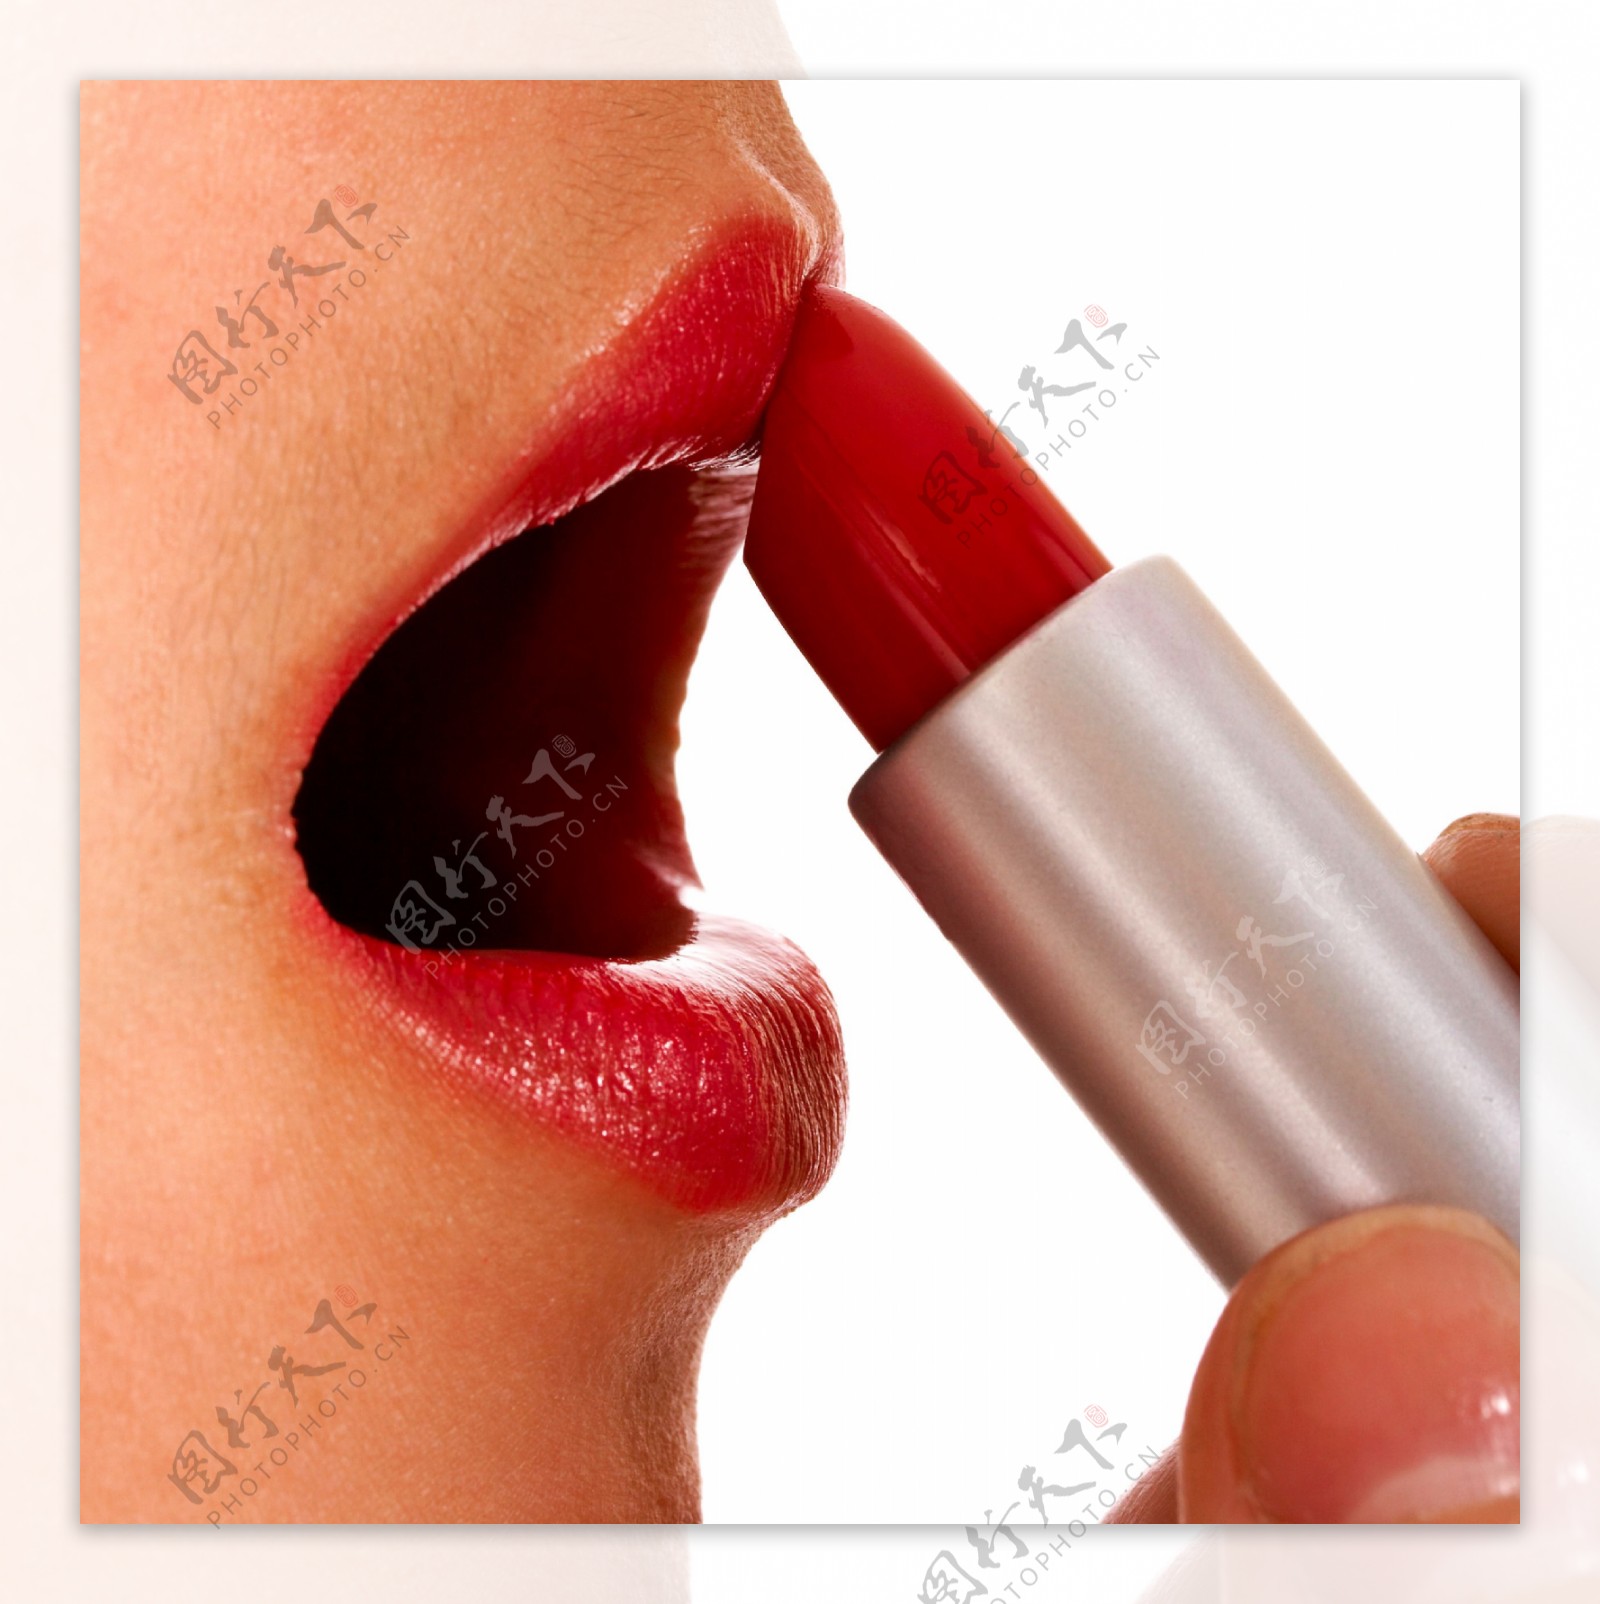 红色的唇膏在嘴唇上的应用